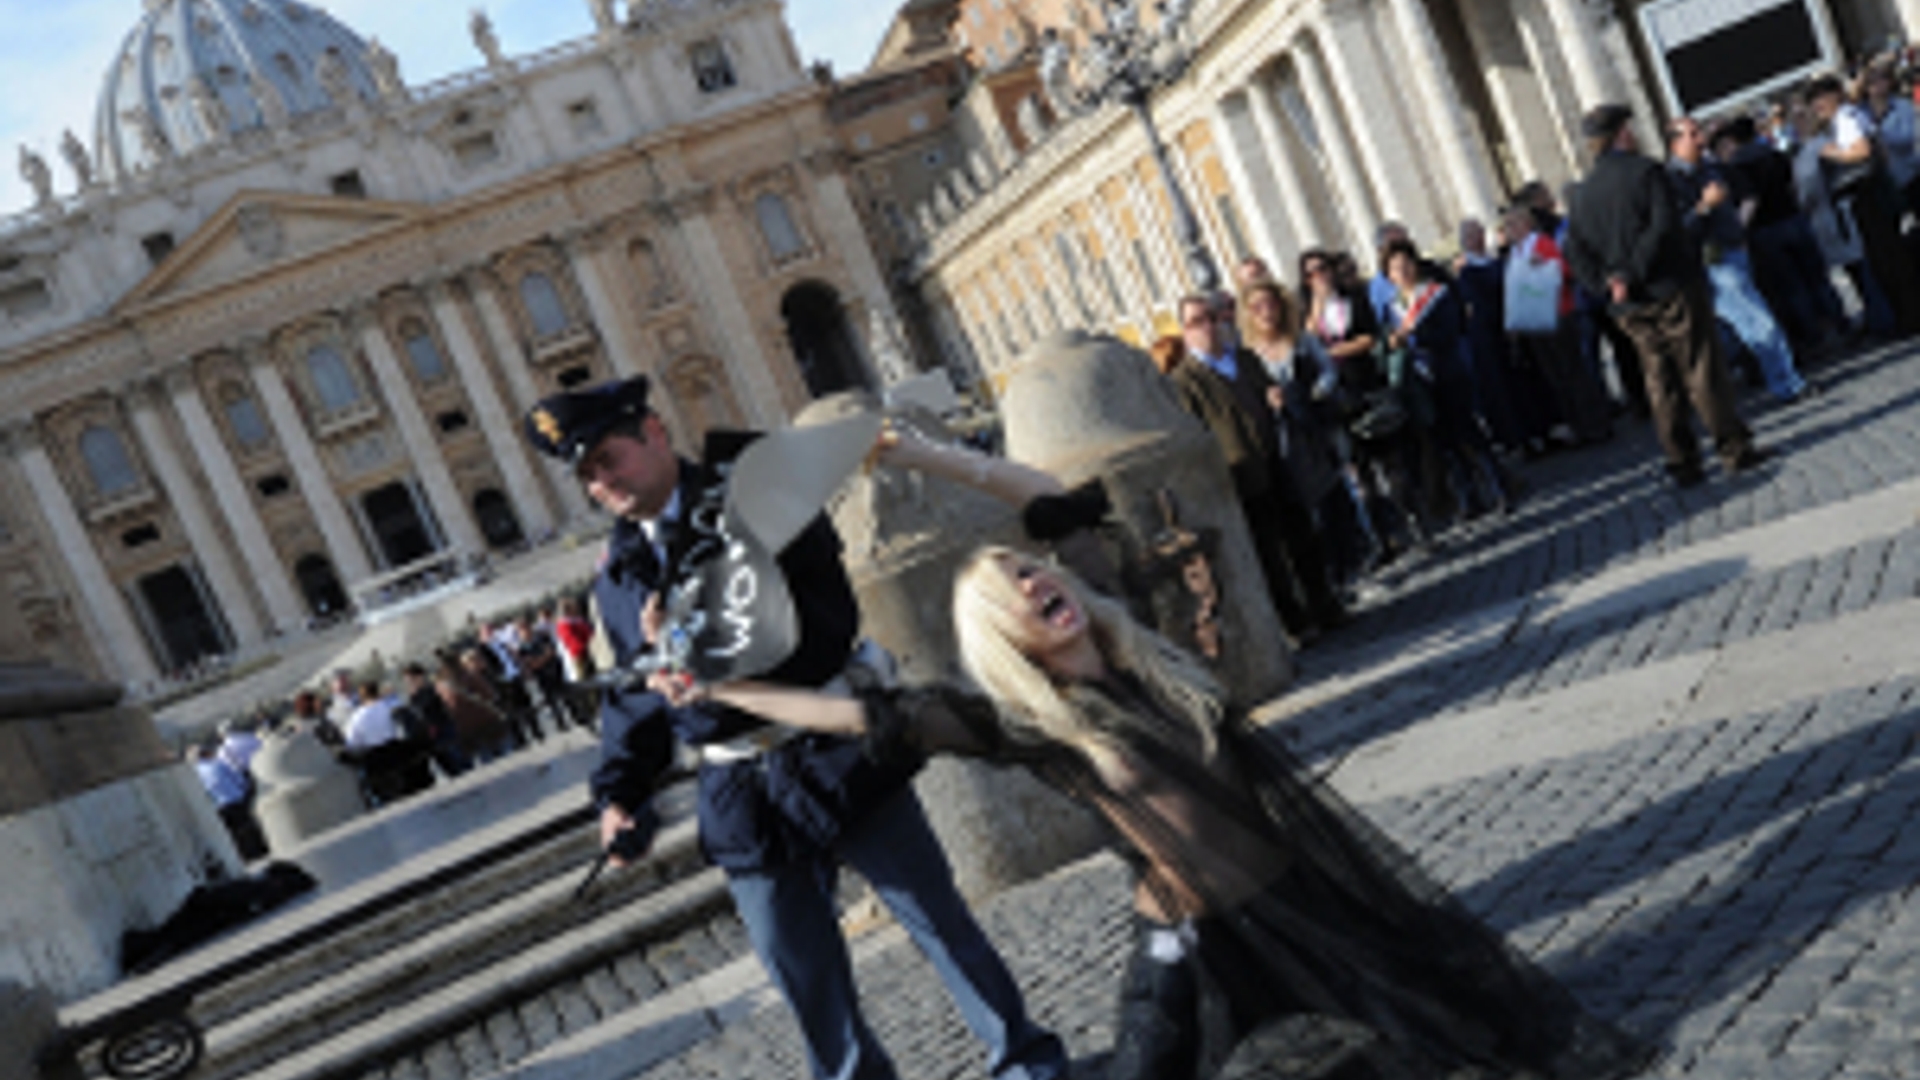 ANP-FEMEN_Vaticaan300.jpg